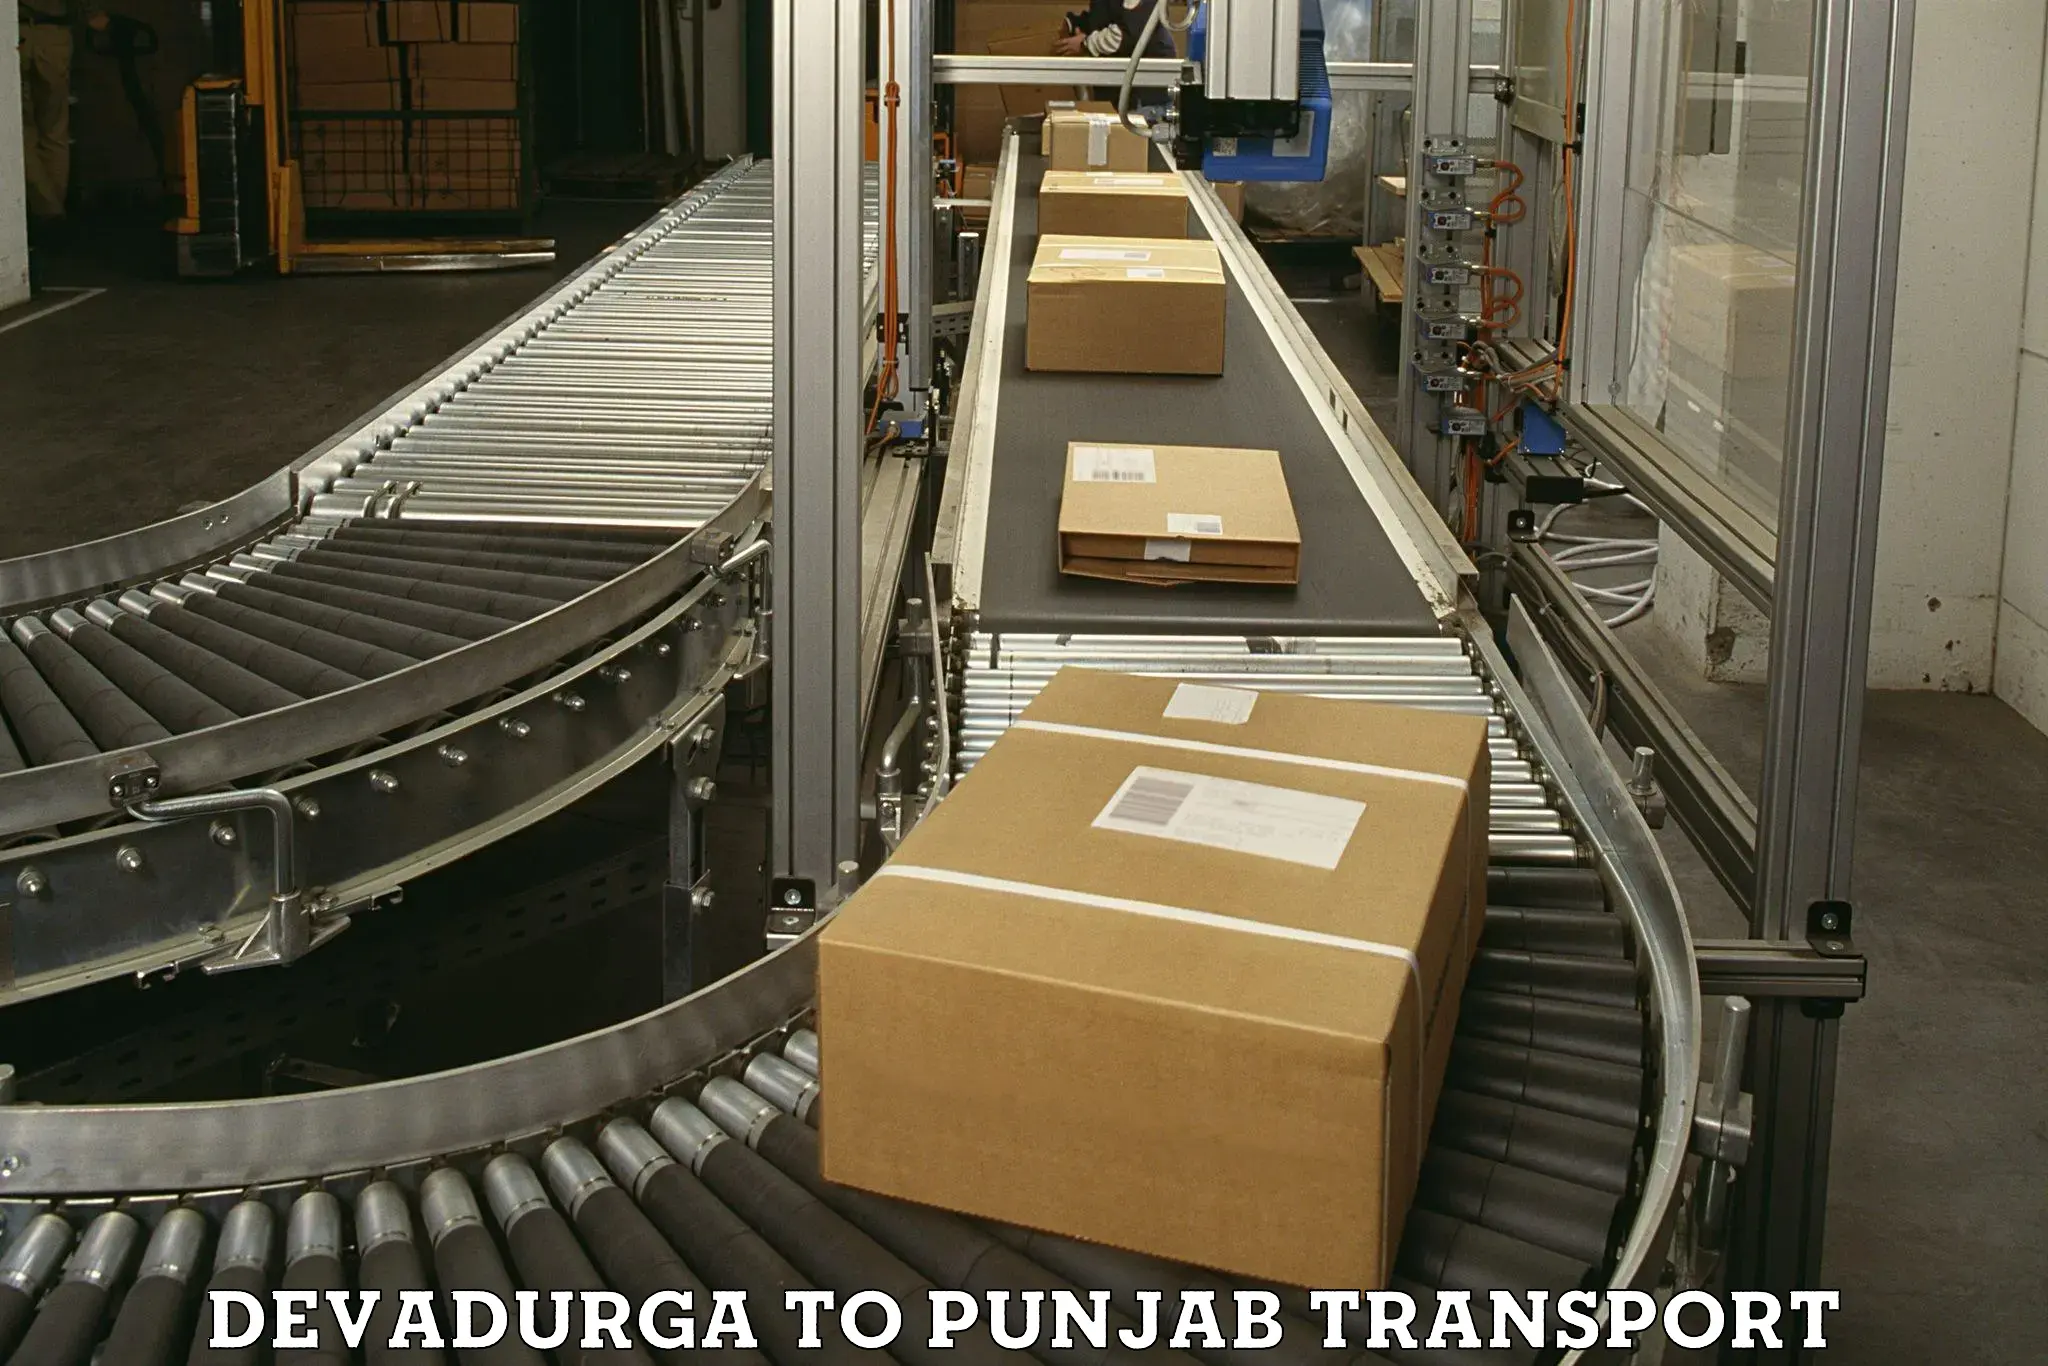 Furniture transport service Devadurga to Jalandhar